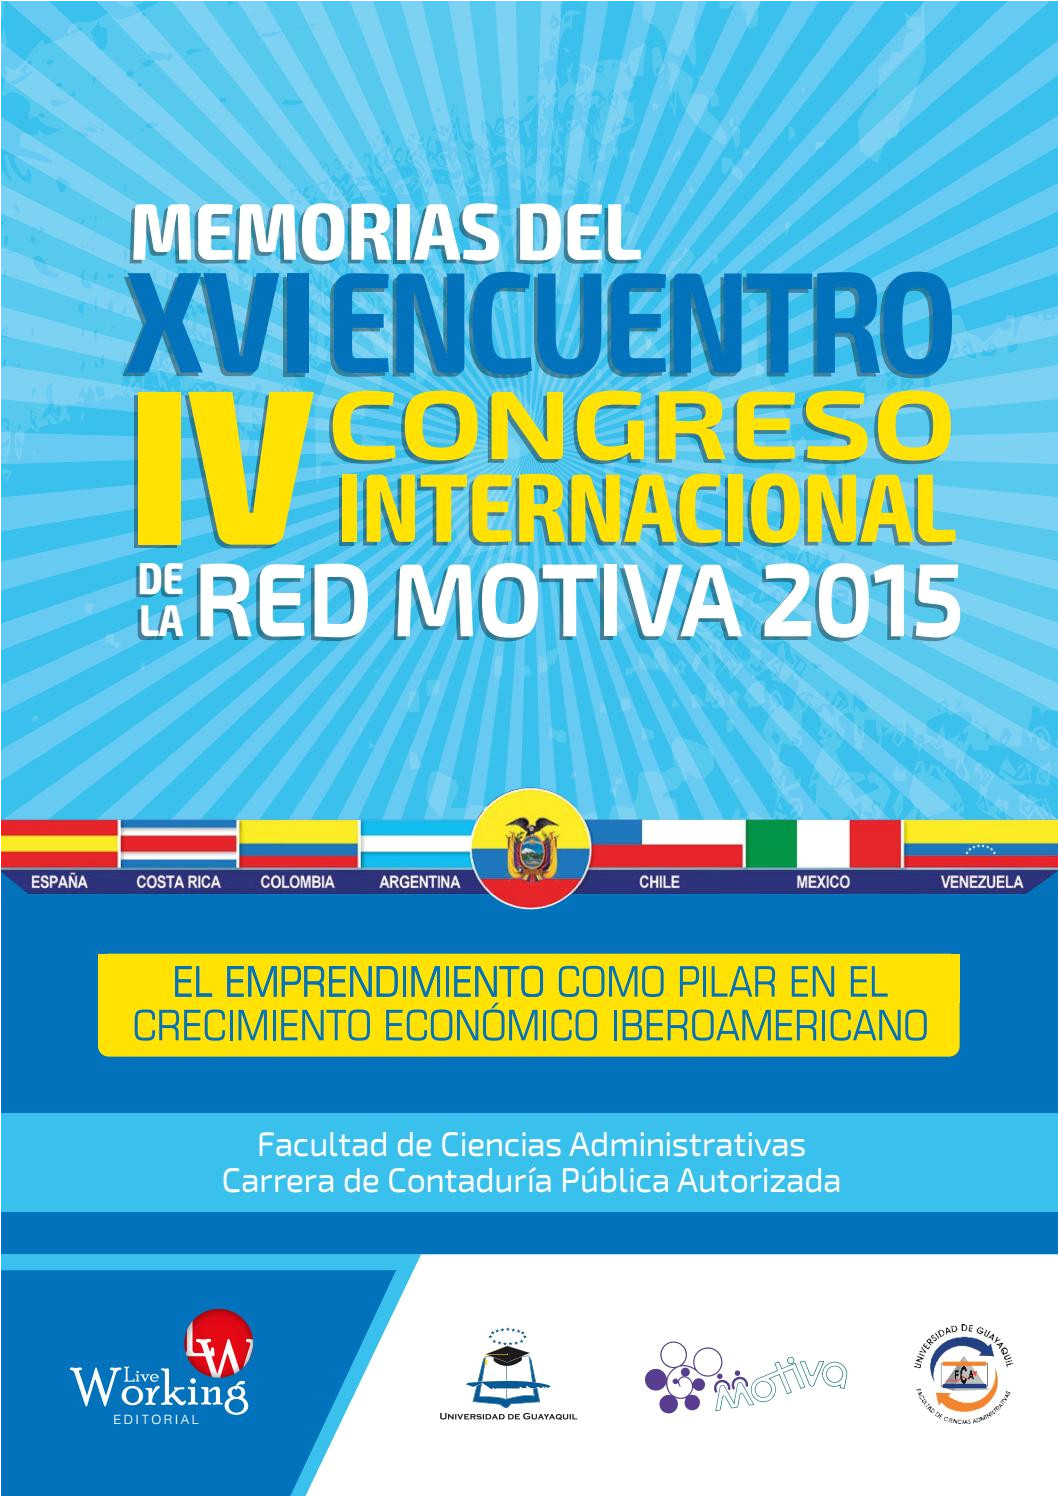 memorias del xvi encuentro iv congreso internacional de la red motiva 2015 by ciencias administrativas ug issuu